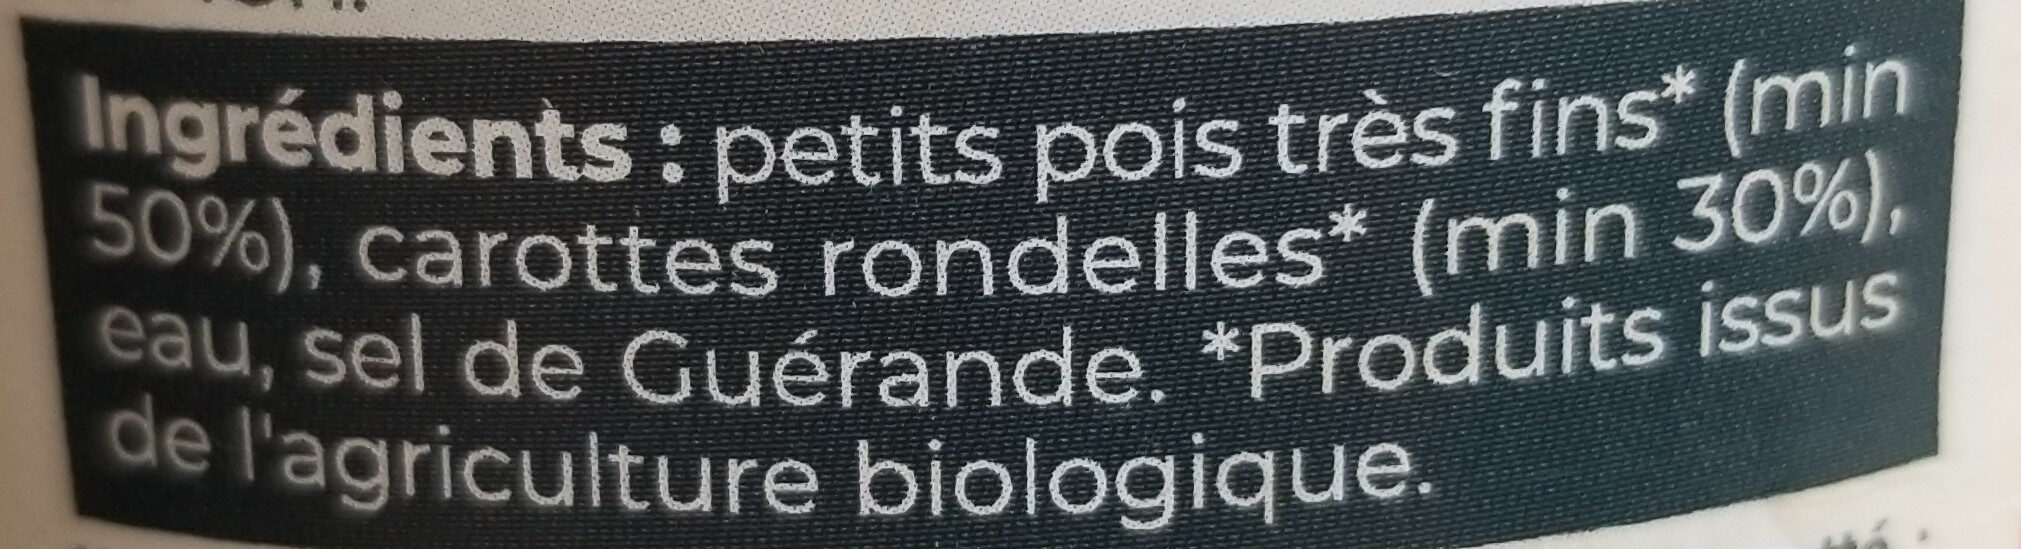 Petits Pois Très Fins & Carottes Rondelles France Bio - Ingrédients